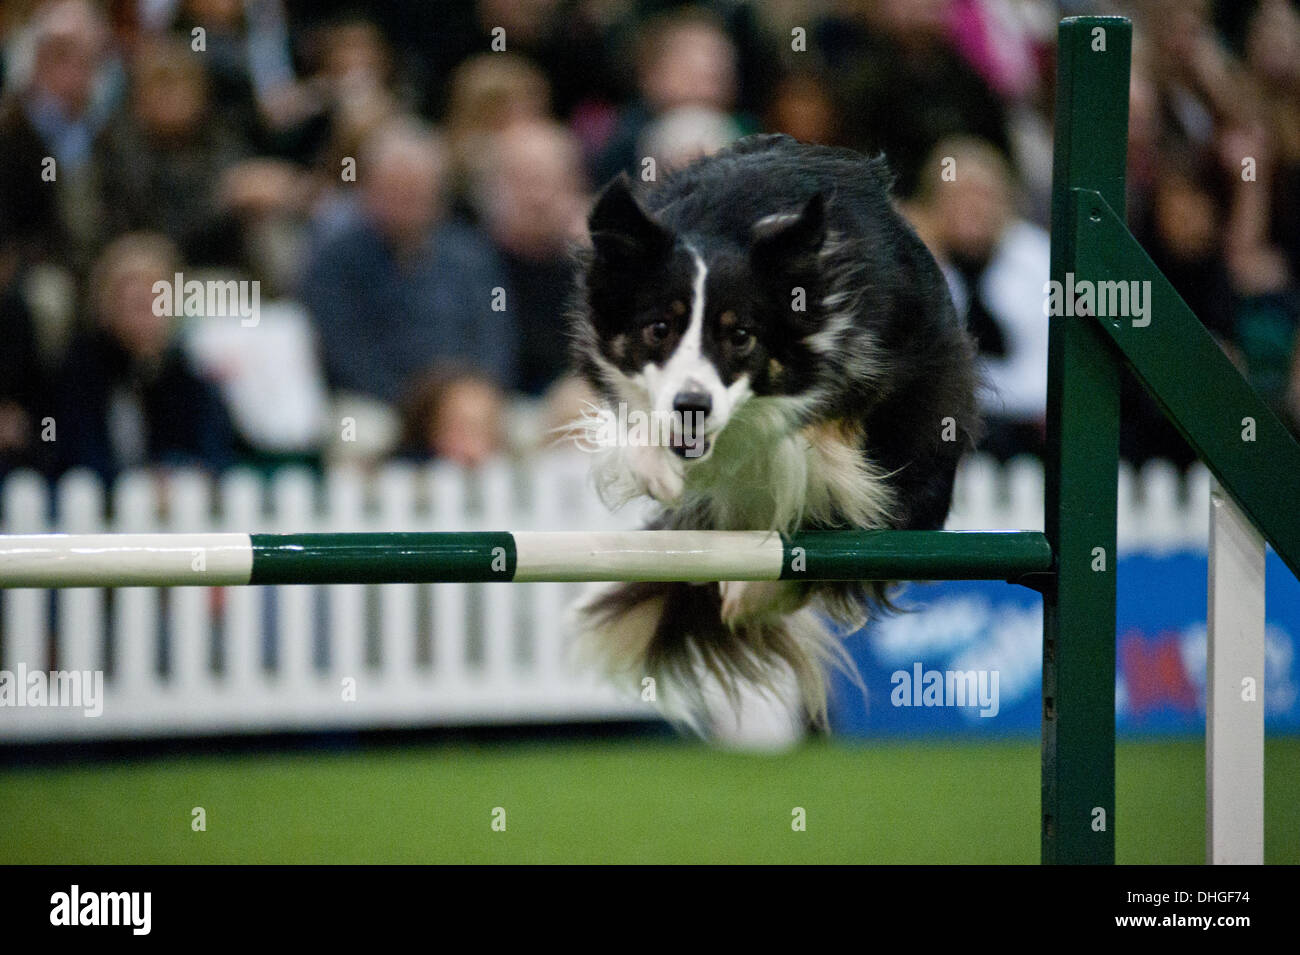 Londres, Royaume-Uni. 9 novembre 2013. Un chien participe à l'agilité/concours de sauts à l'Découvrez les chiens 2013 show à Earl's Court. © Piero Cruciatti/Alamy Live News Banque D'Images